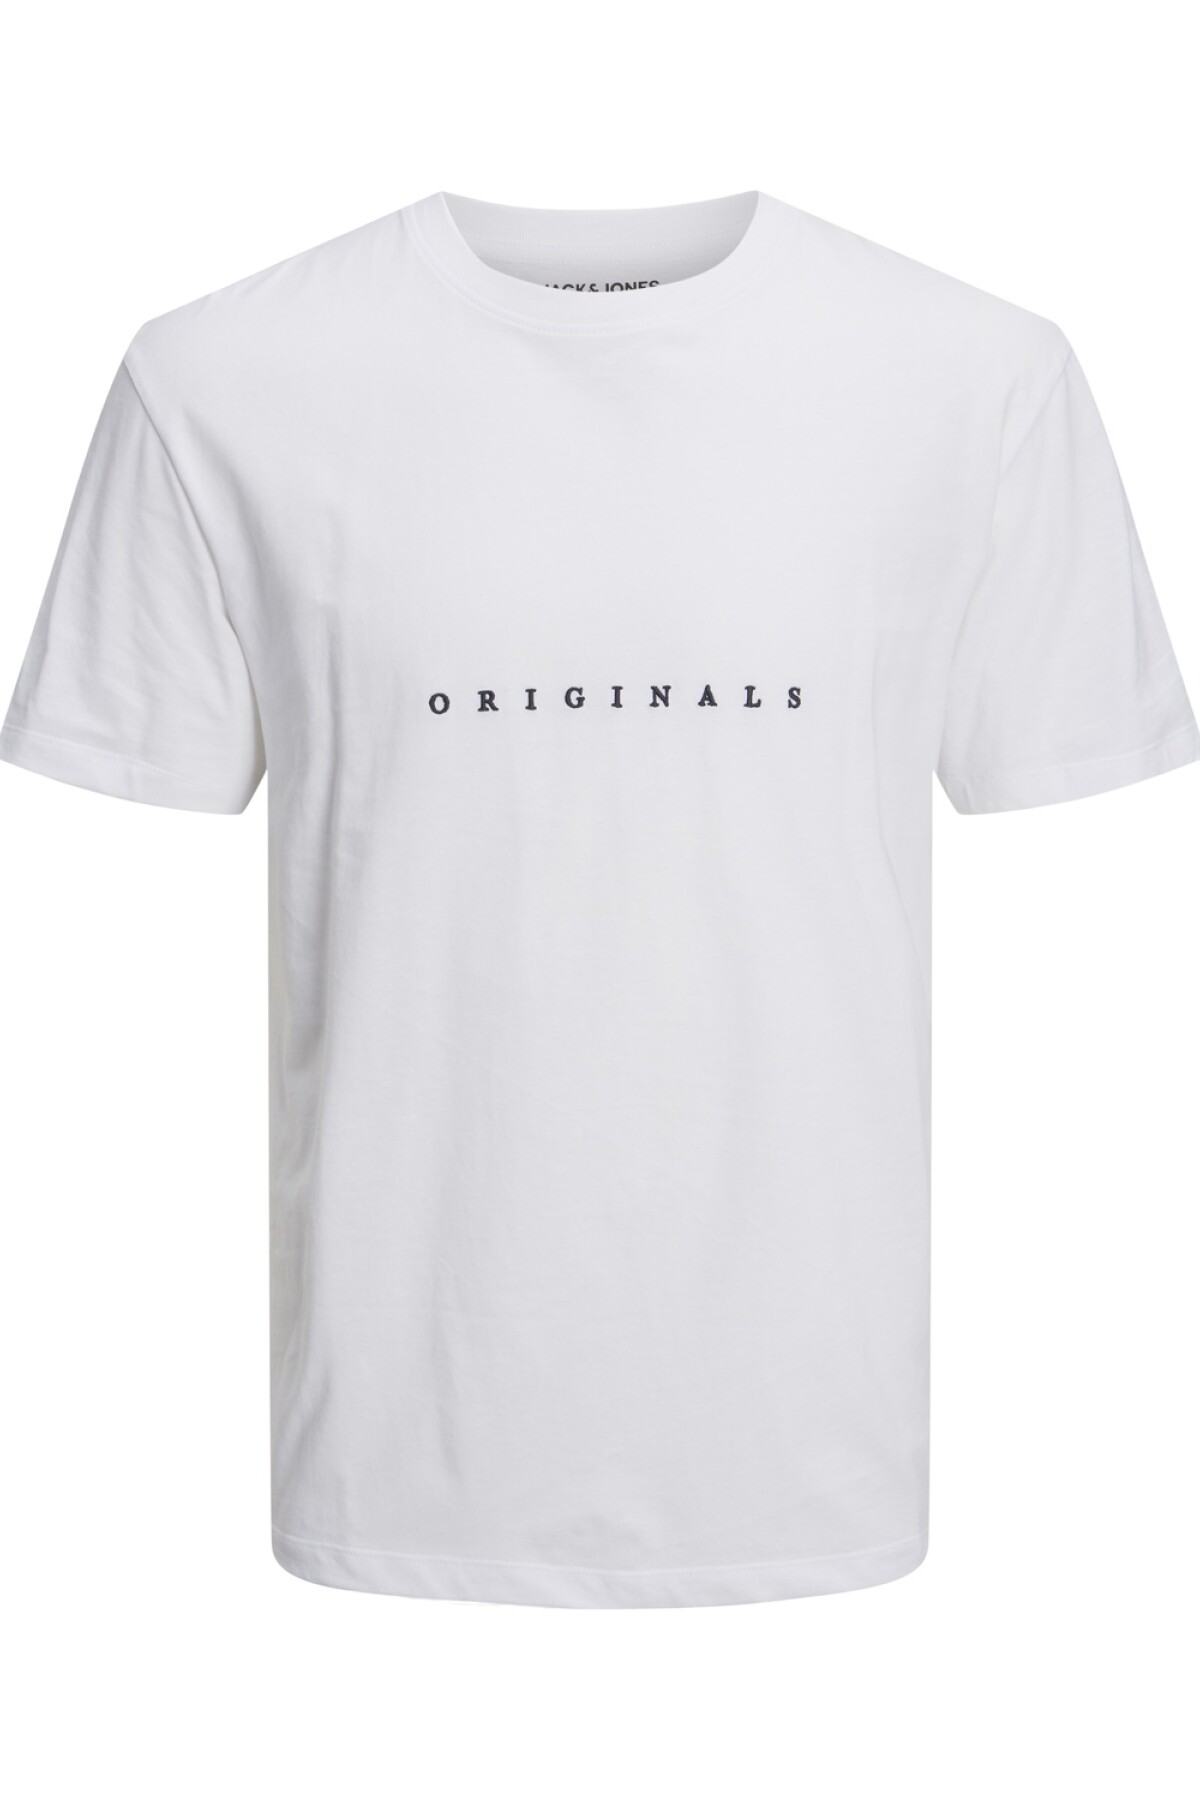 Camiseta Copenhagen Clásica Bright White